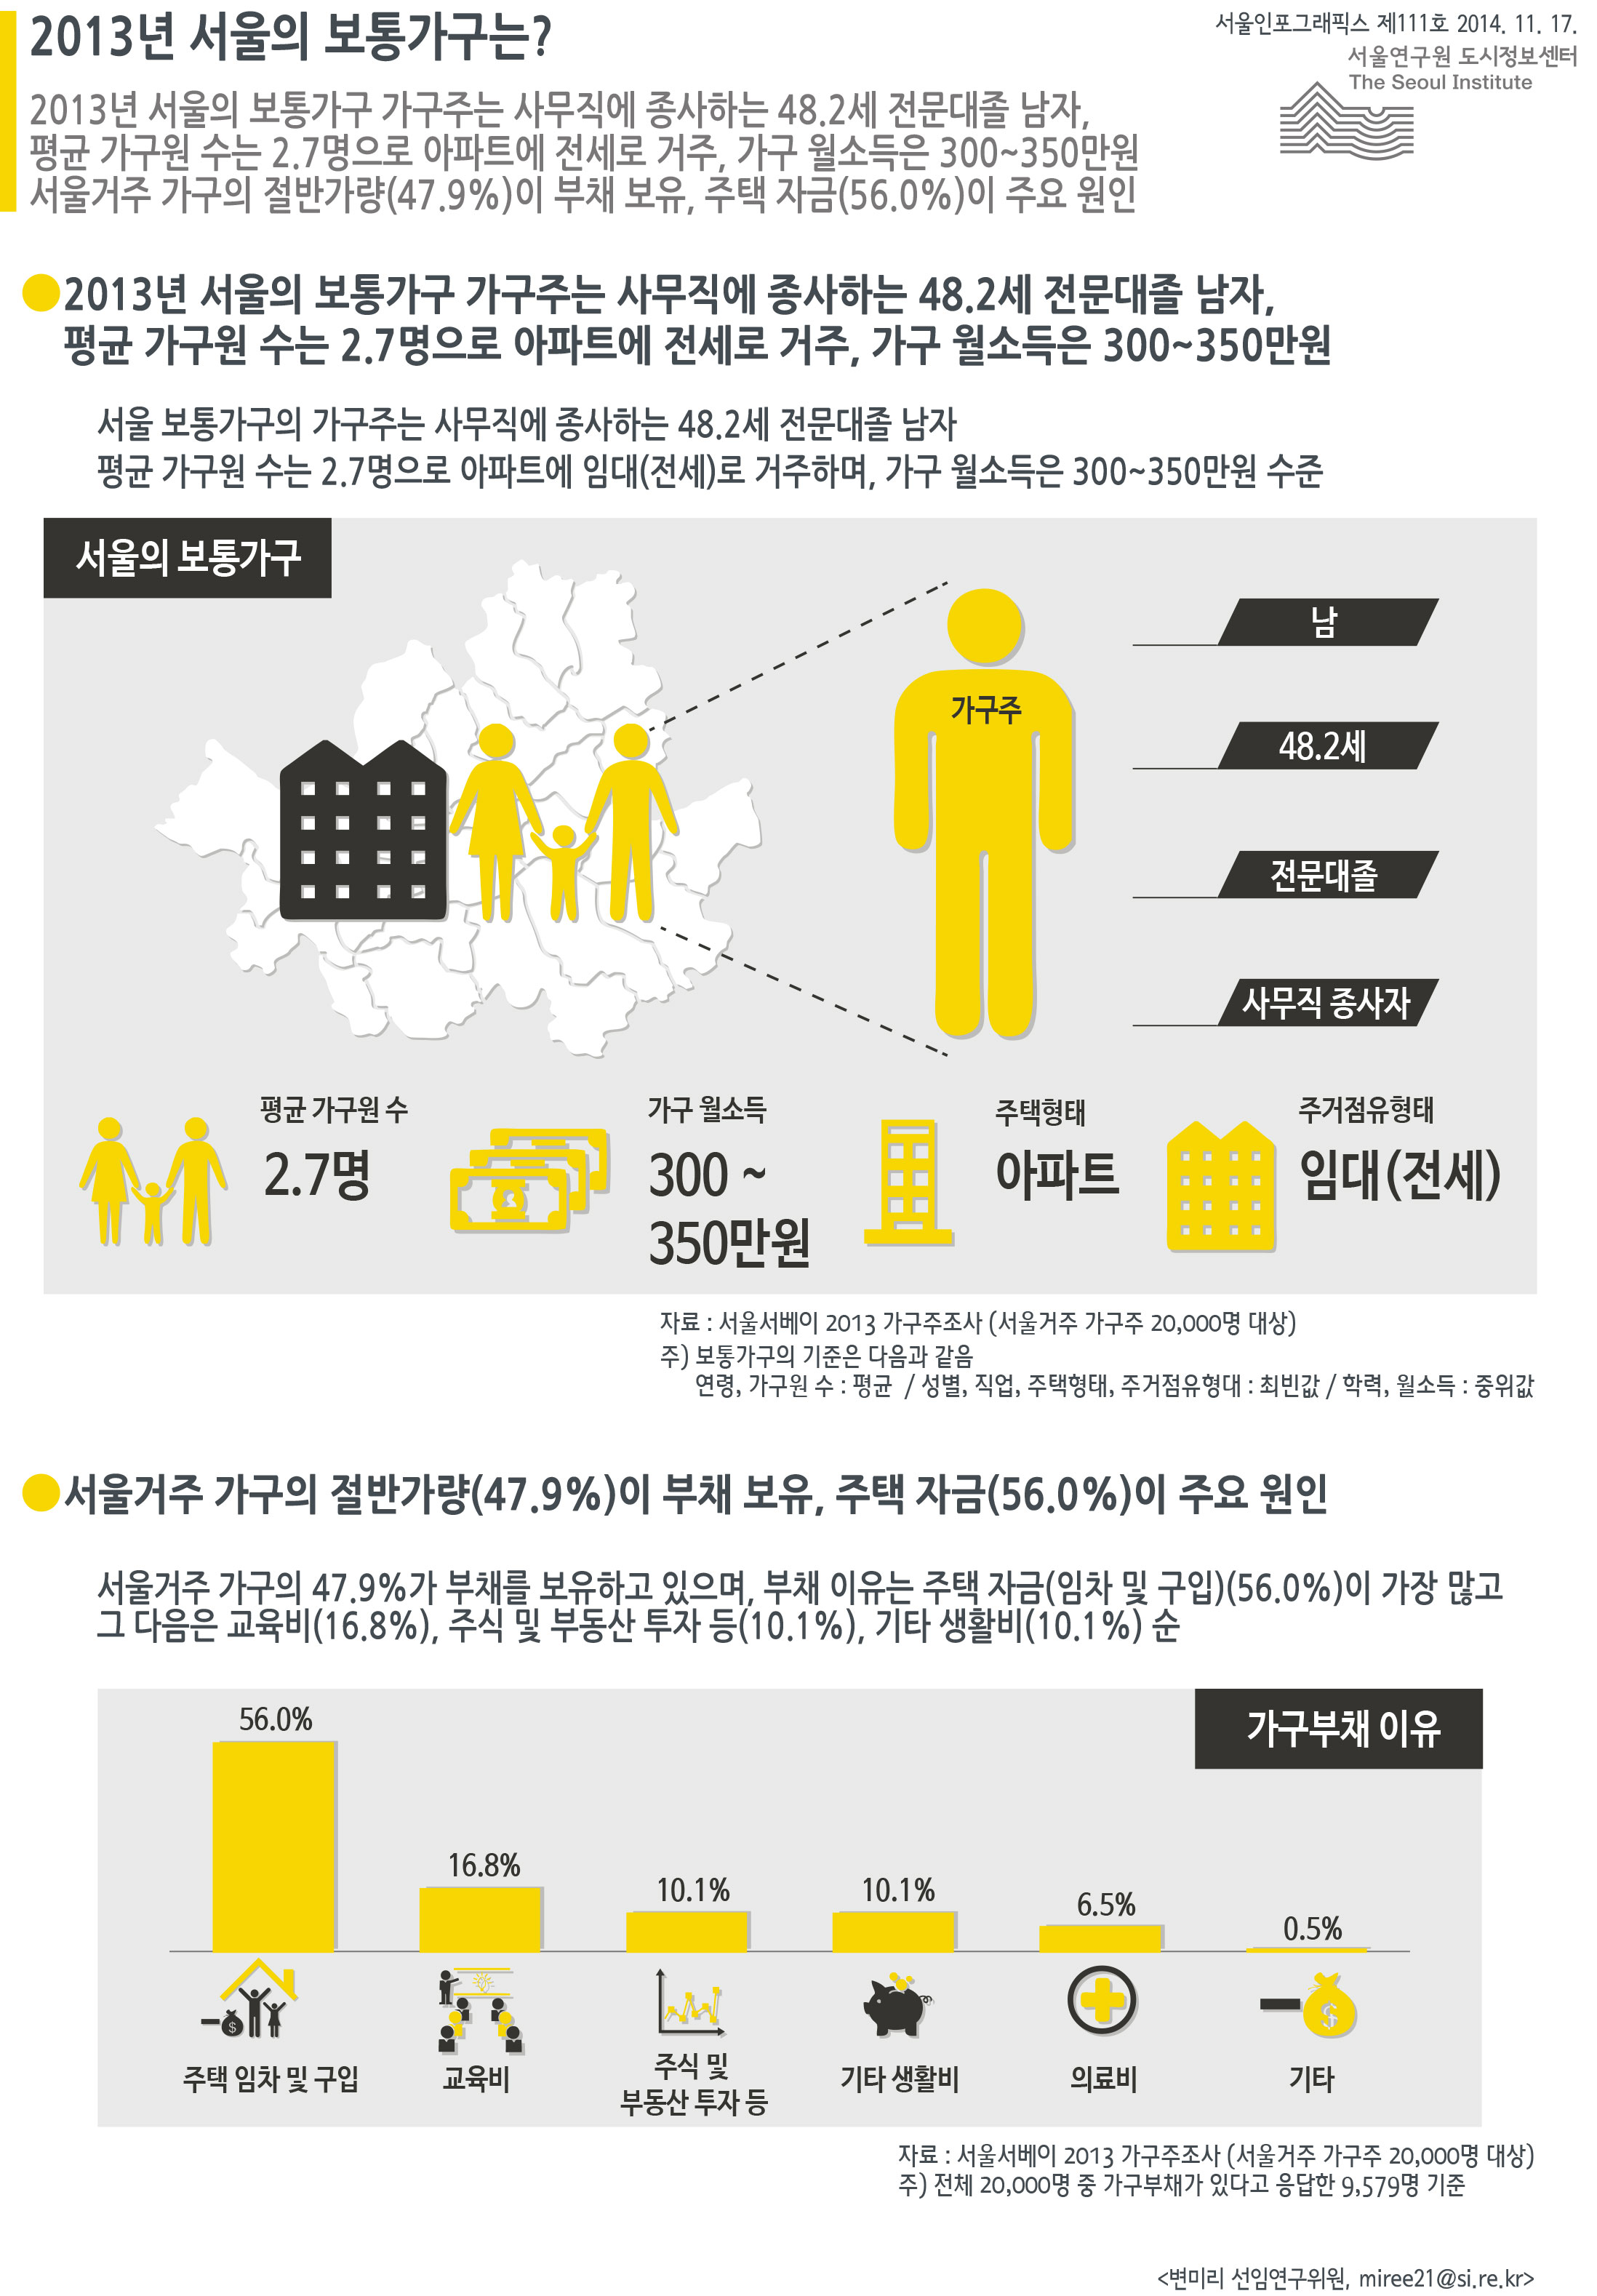  2013년 서울의 보통가구는? 서울인포그래픽스 제111호 2014년 11월 17일 2013년 서울의 보통가구 가구주는 사무직에 종사하는 48.2세 전문대졸 남자, 평균 가구원 수는 2.7명으로 아파트에 전세로 거주, 가구 월소득은 300~350만원. 서울거주 가구의 절반가량(47.9%)이 부채 보유, 주택 자금(56.0%)이 주요 원인으로 정리될 수 있습니다. 인포그래픽으로 제공되는 그래픽은 하단에 표로 자세히 제공됩니다.